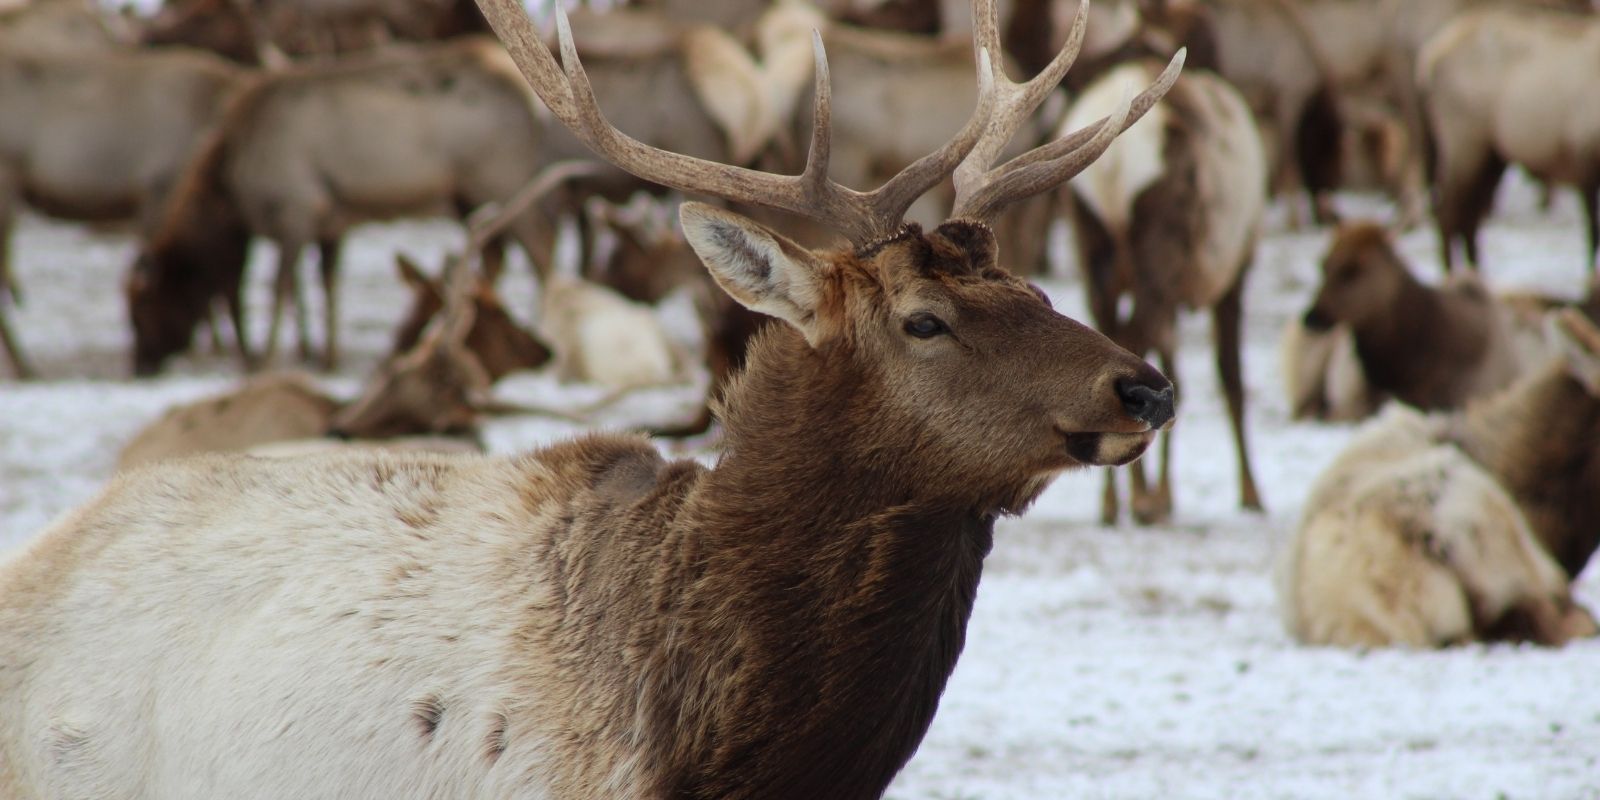 Elk in winter at the National Elk Refuge